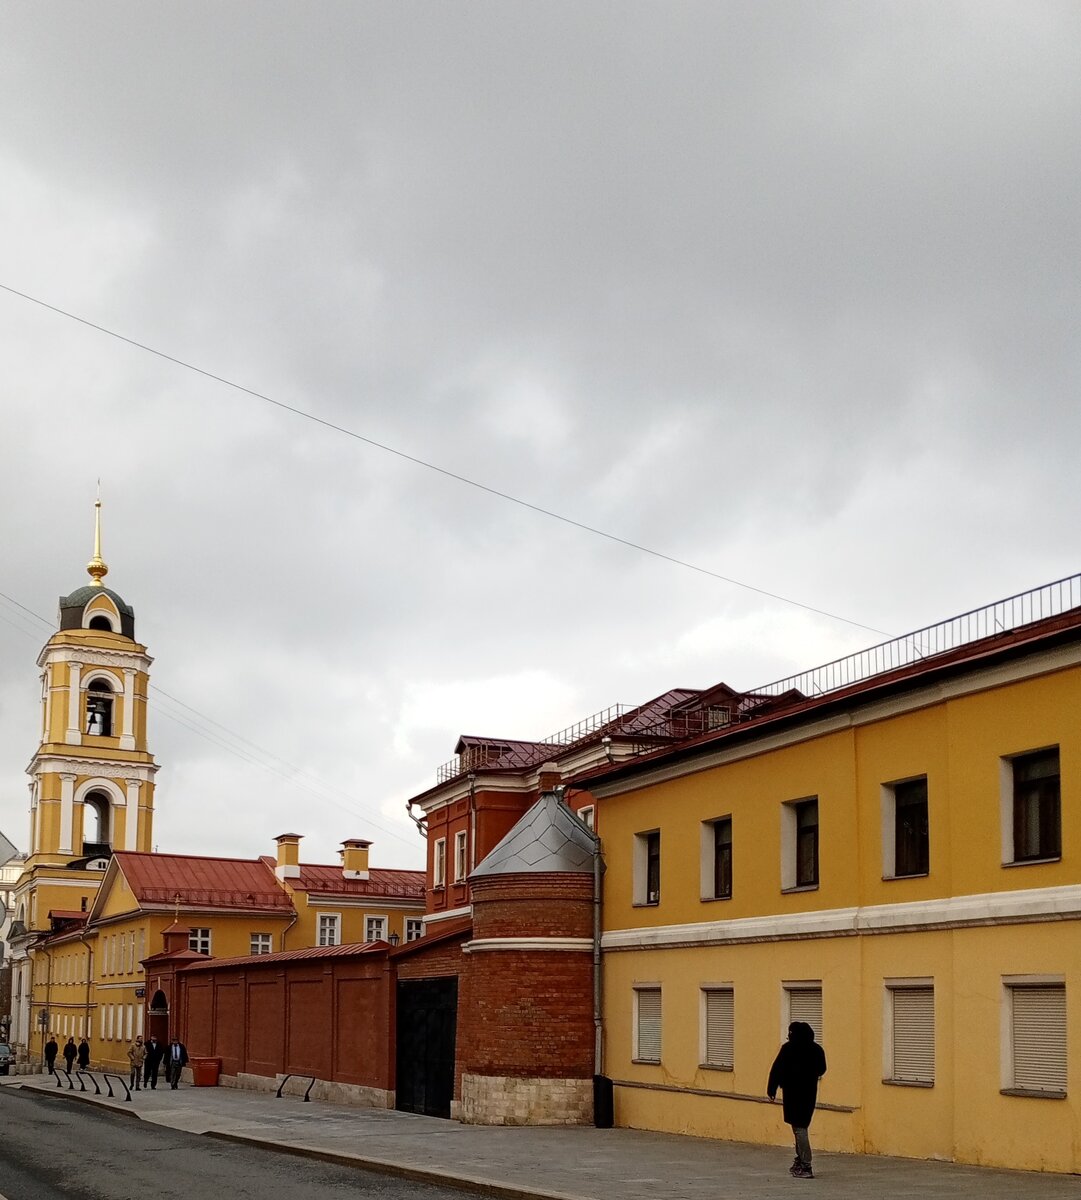 Улица Рождественка. Колокольня Богородице-Рождественского монастыря. Фото автора